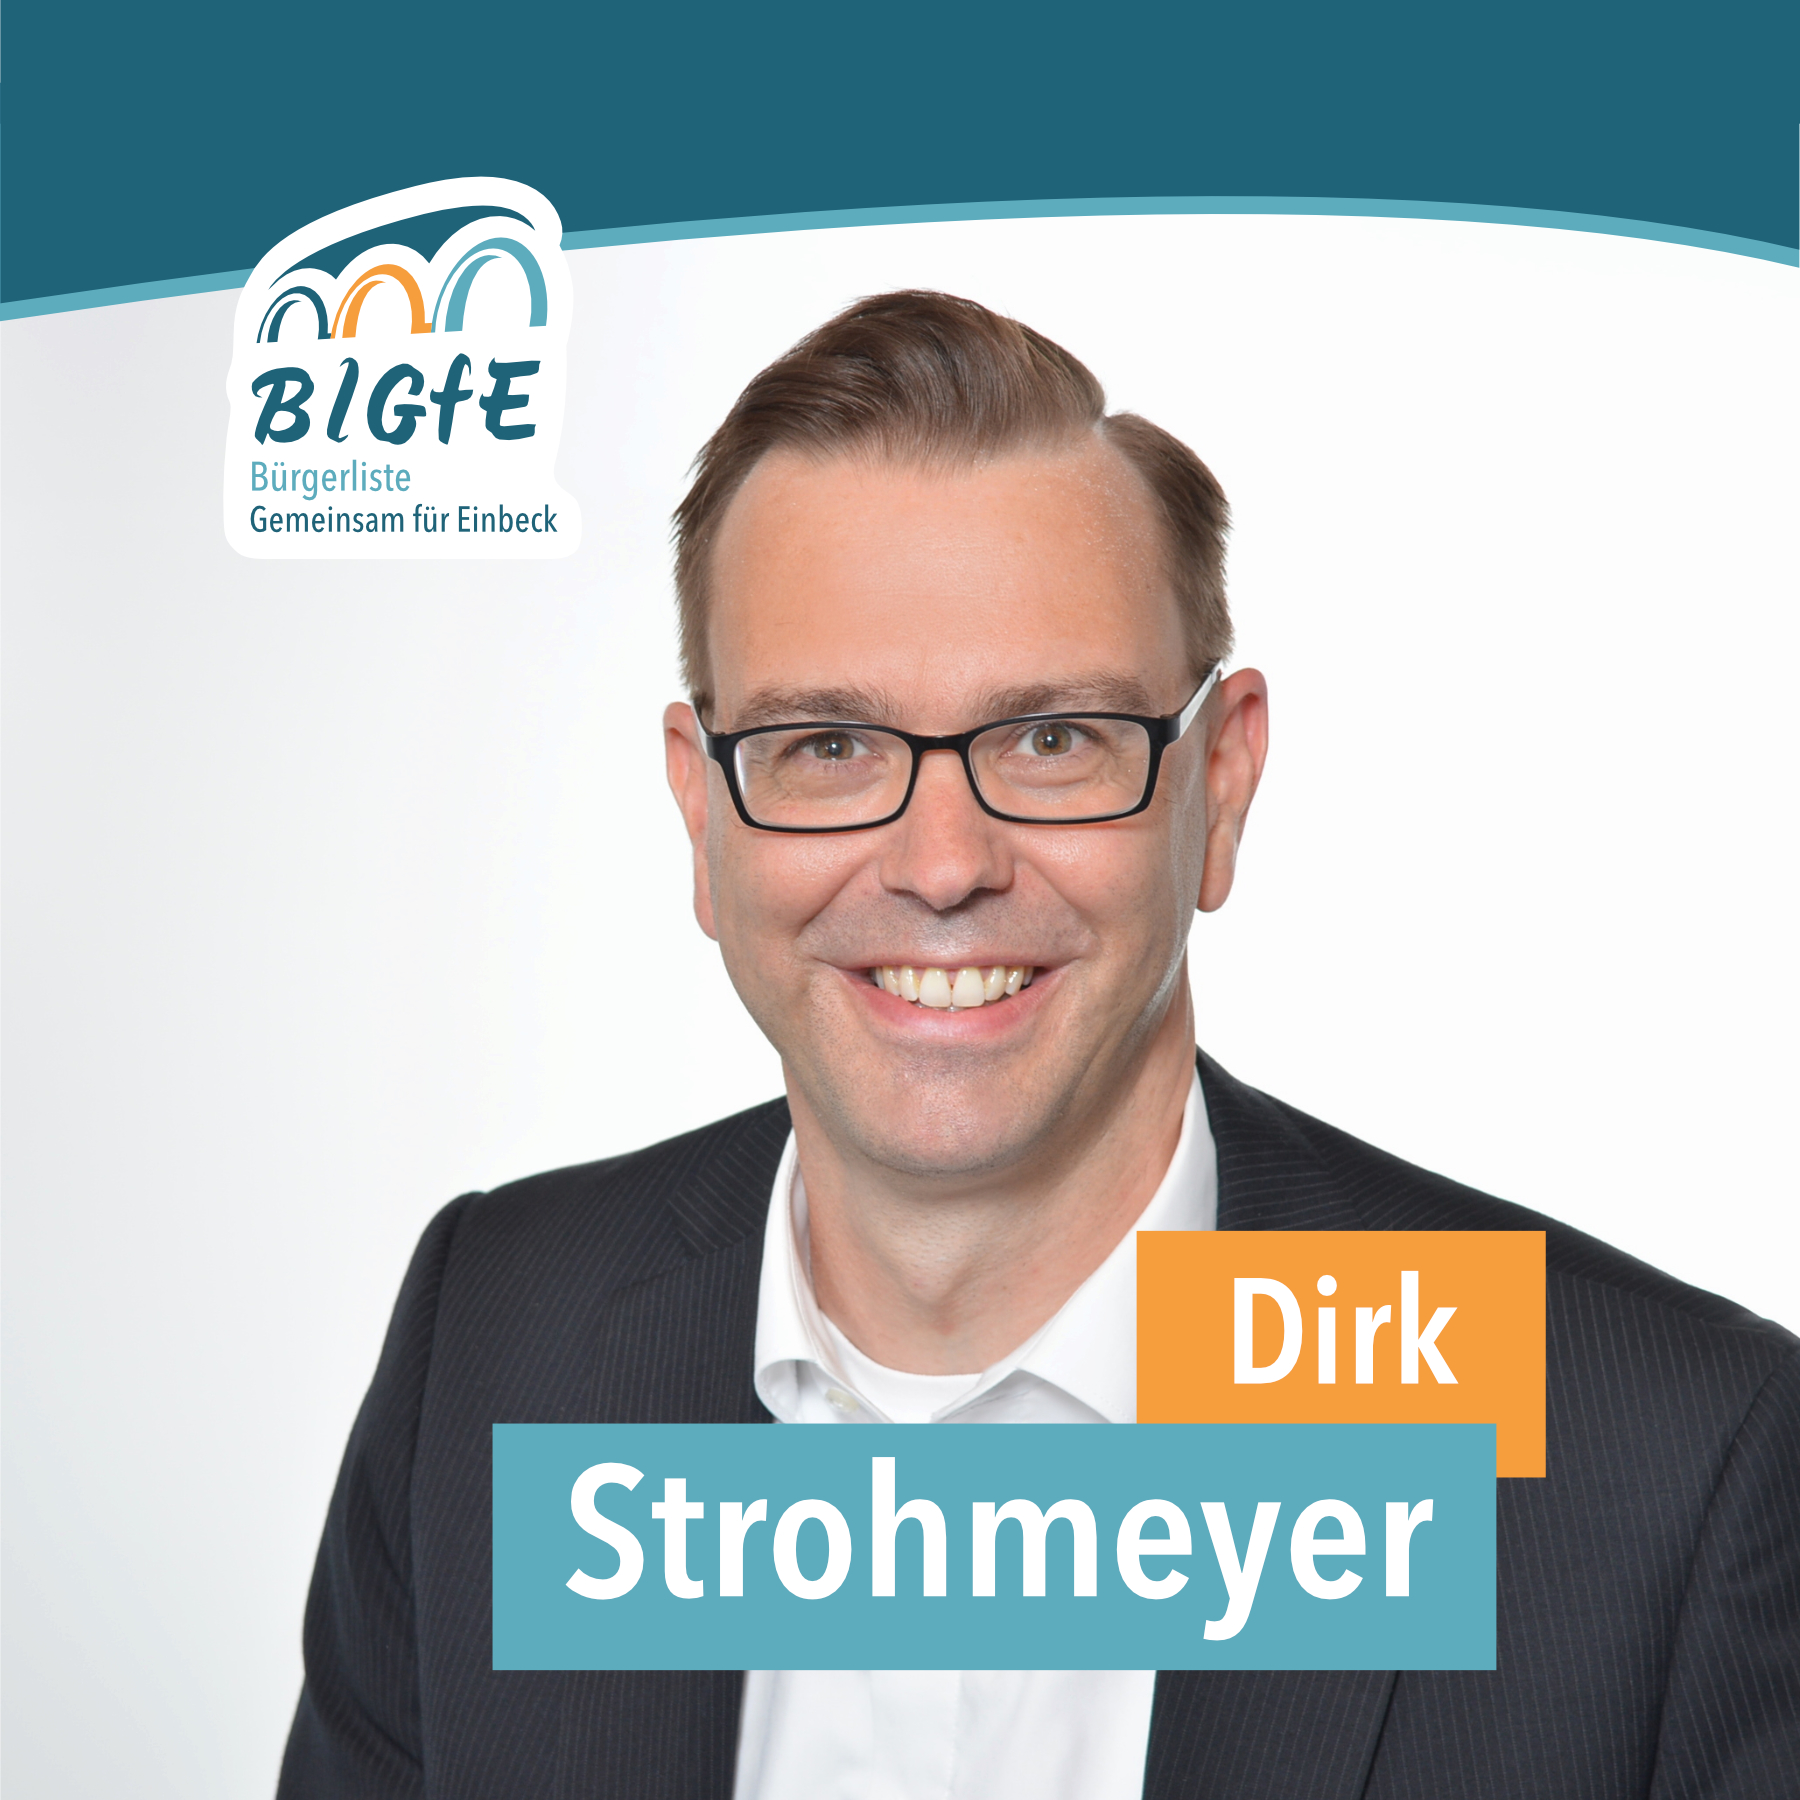 Dirk Strohmeyer